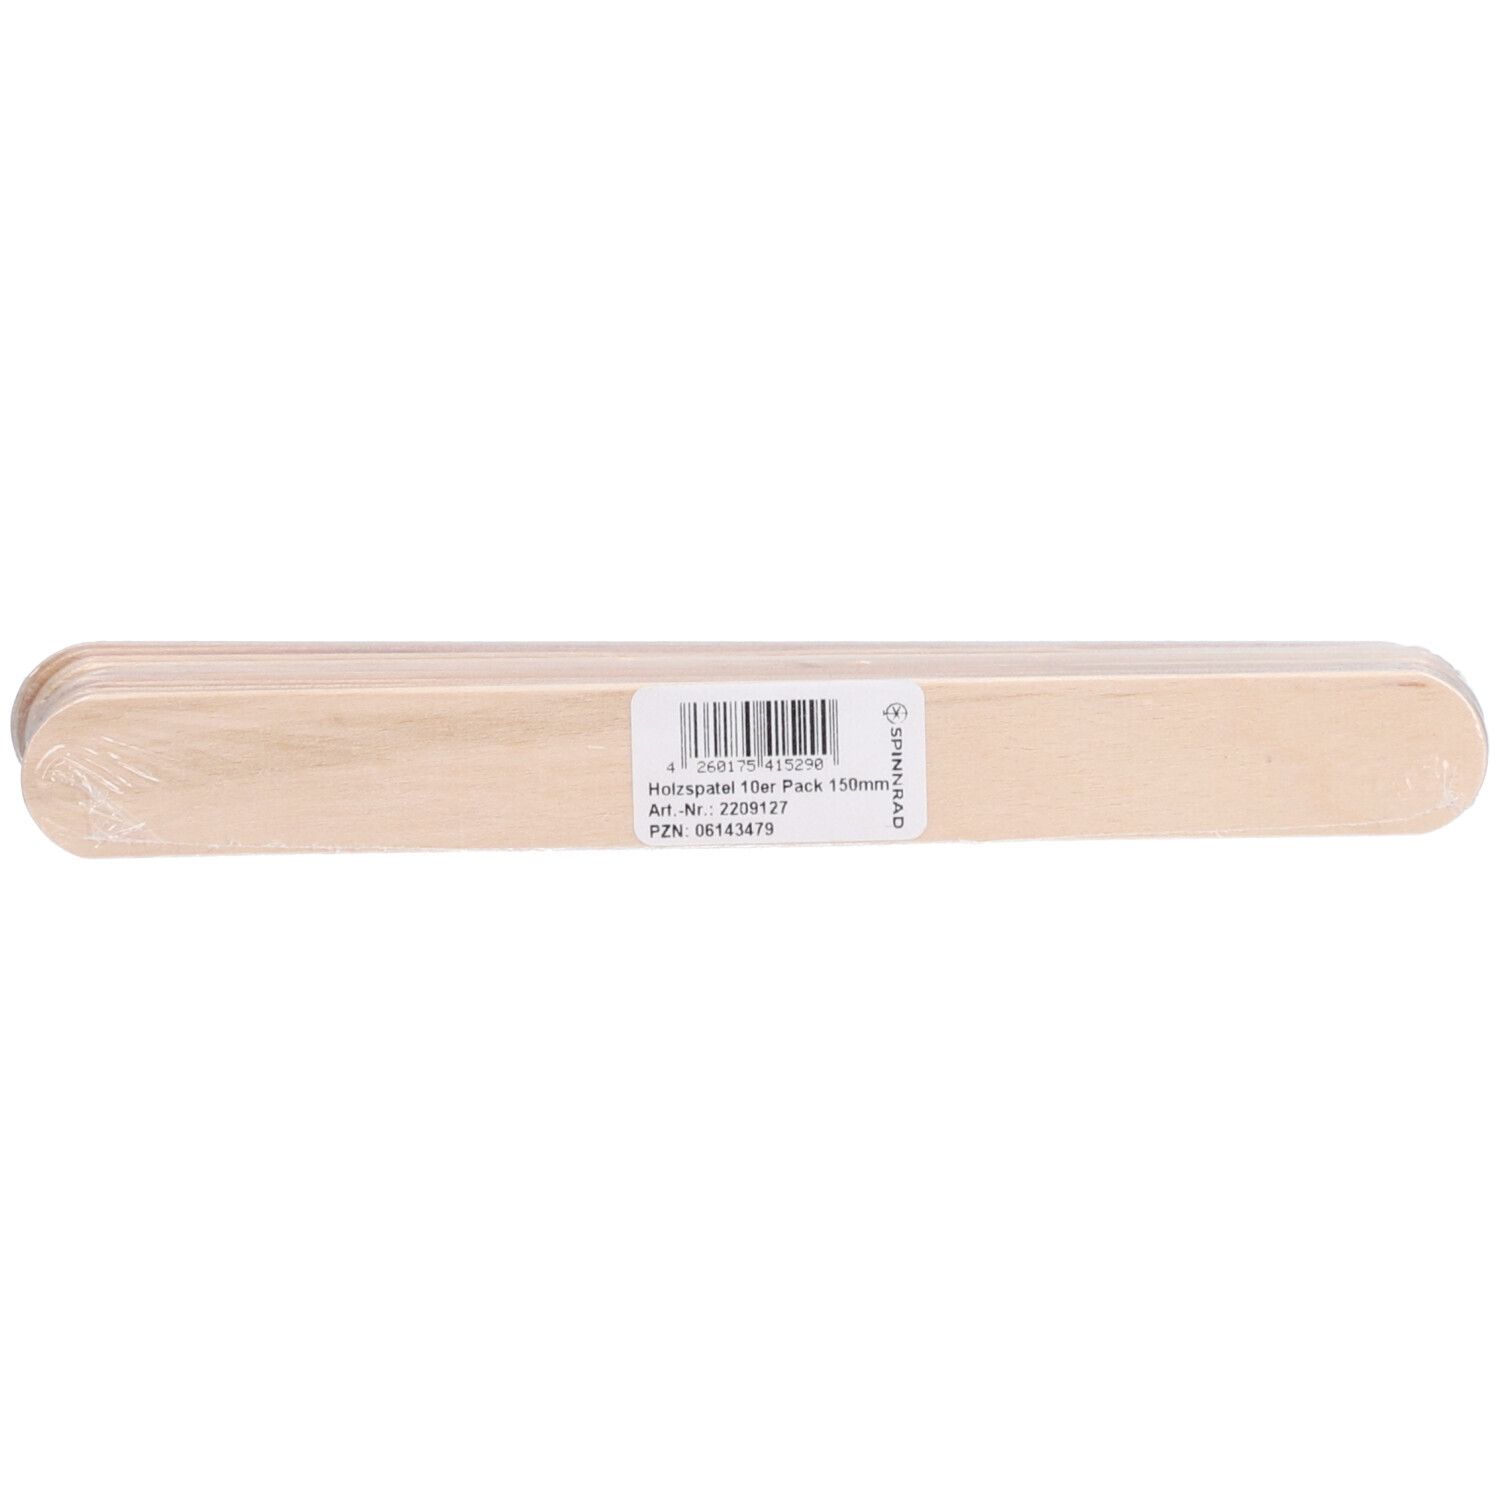 Spinnrad® Spatel 150 mm - Holz